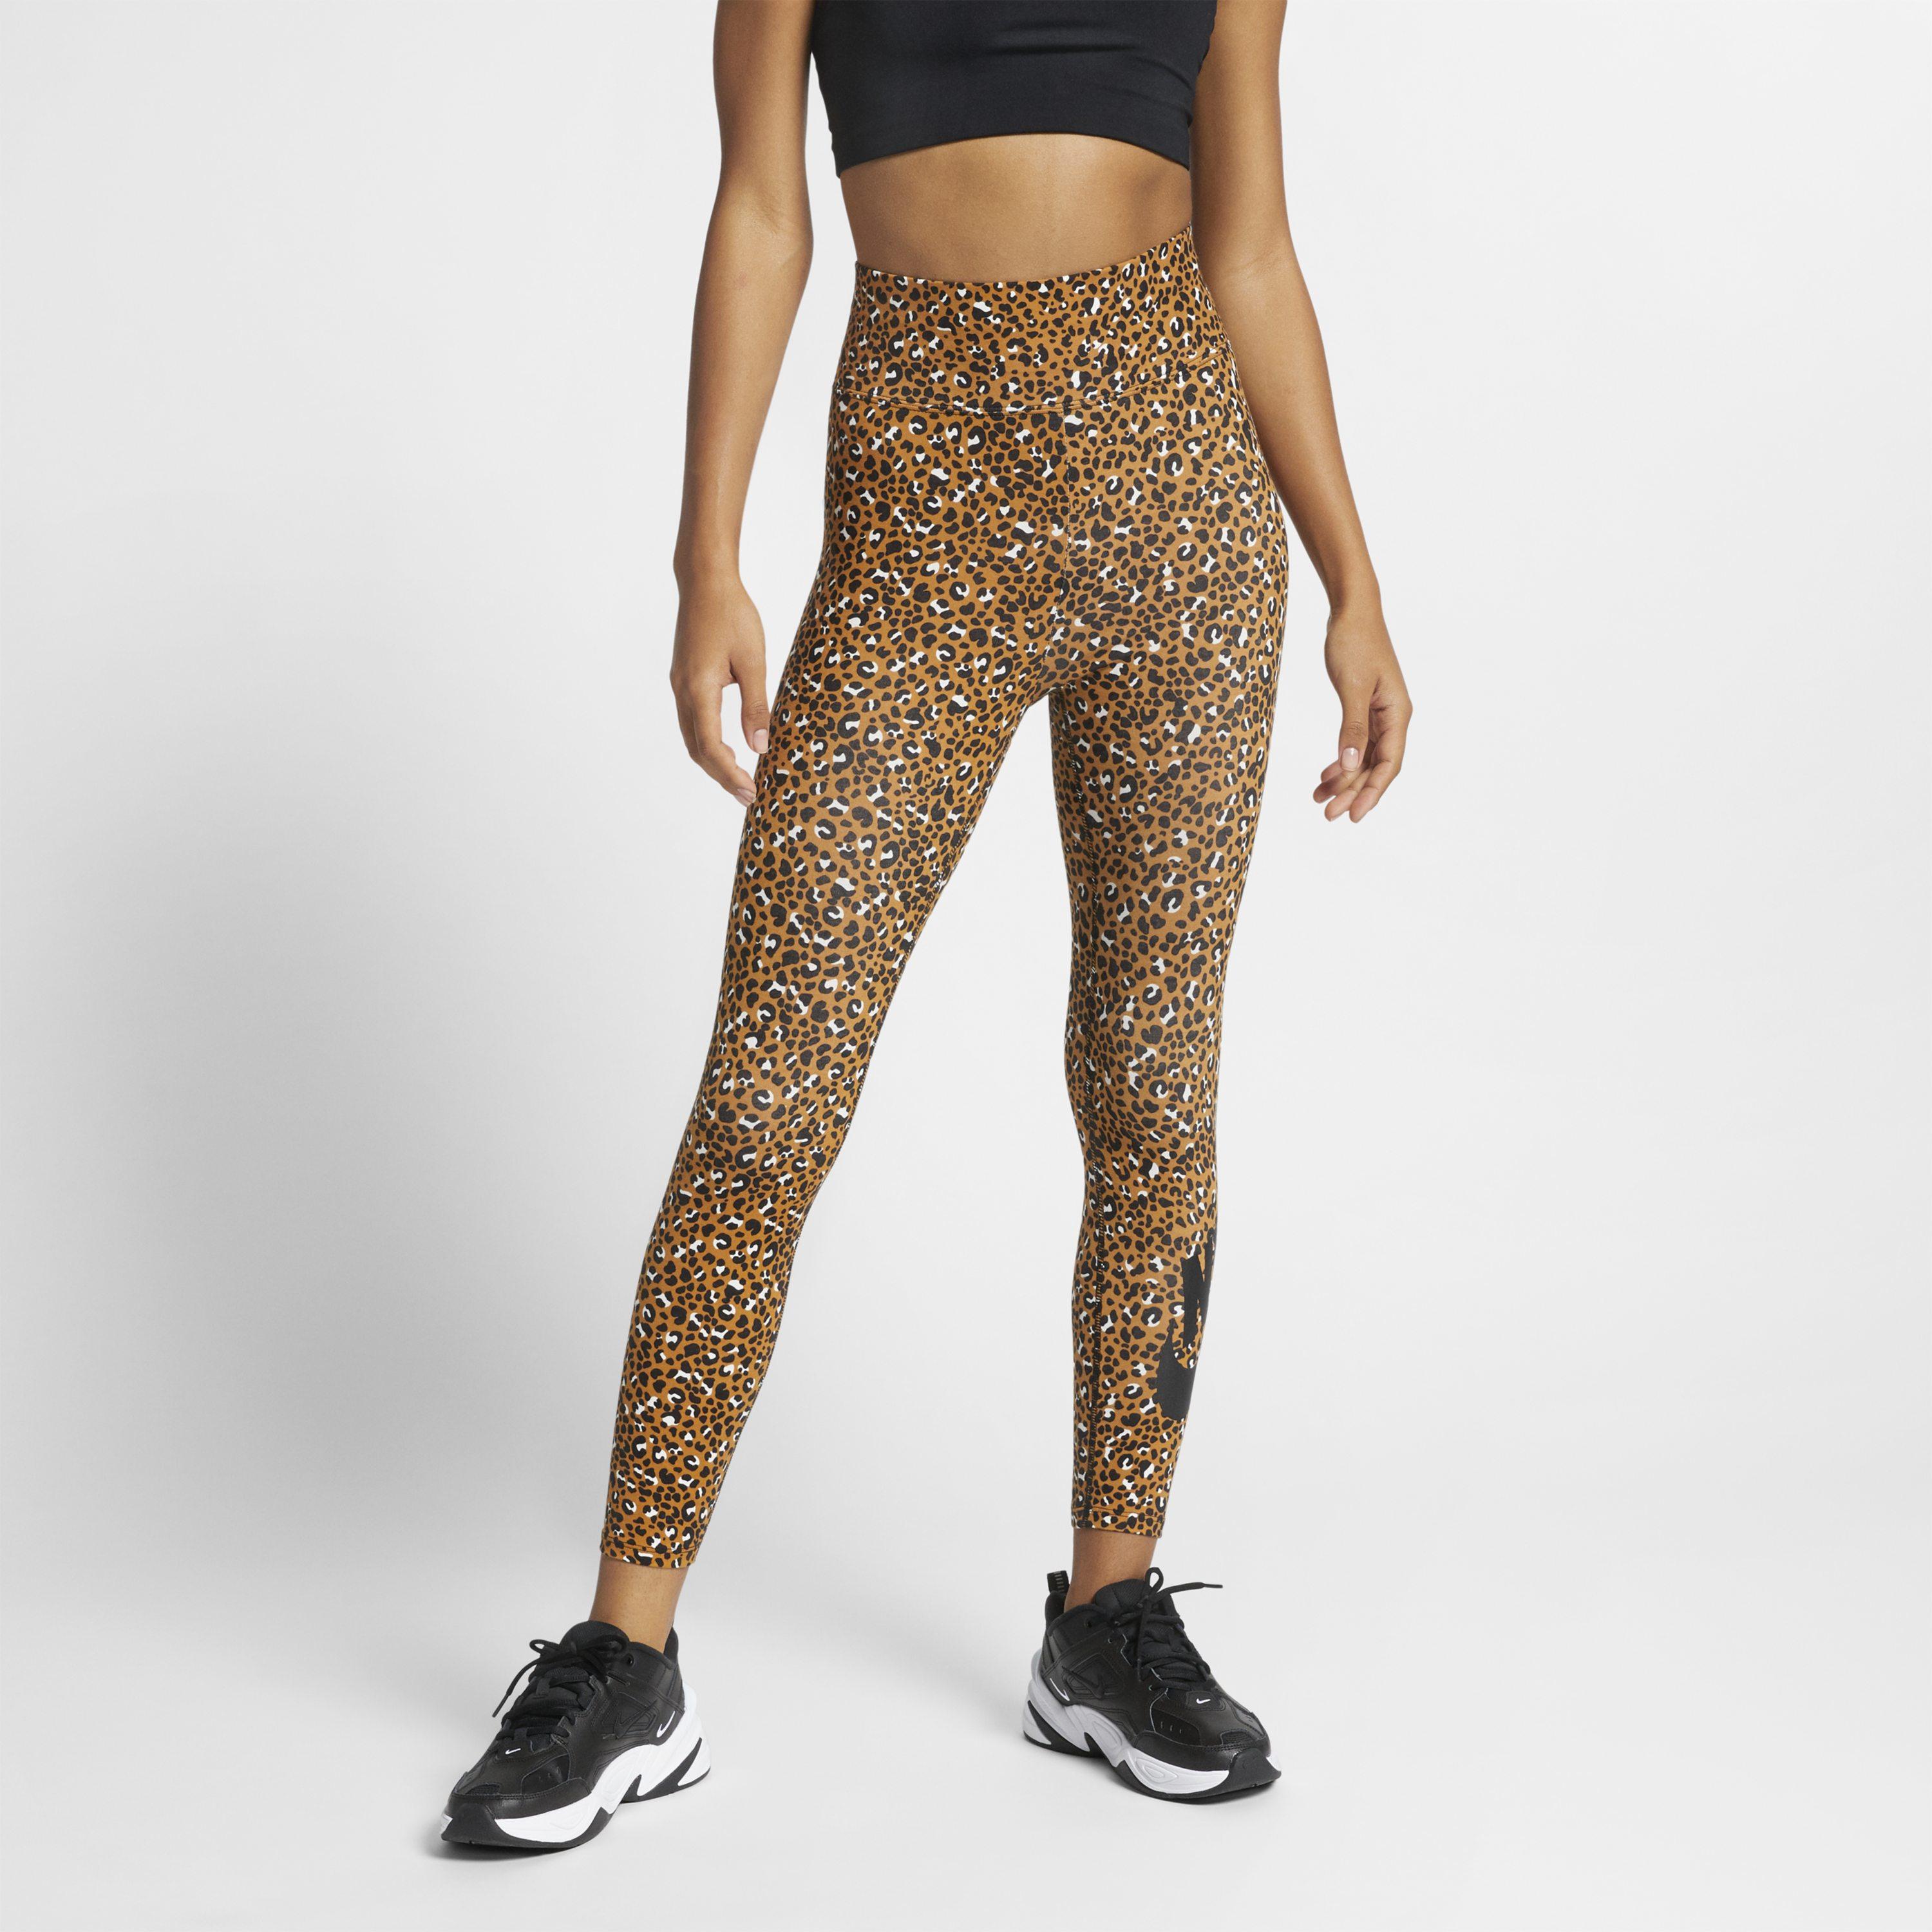 Nike Leopard Print leggings in Brown/Black (Brown) - Lyst